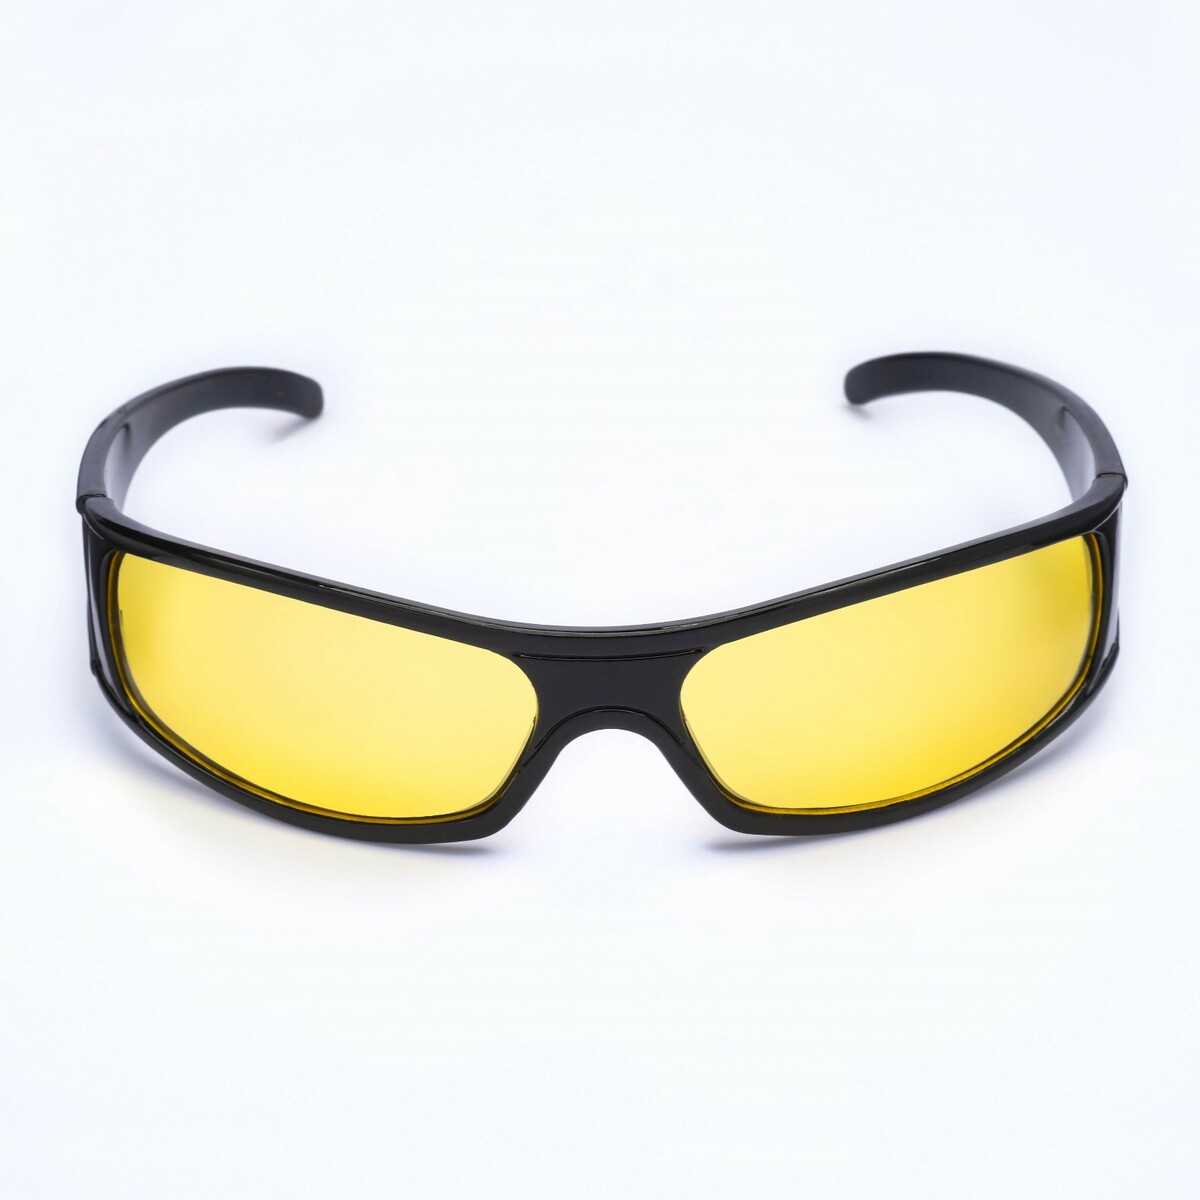 Желтые линза для маски. Очки с желтыми линзами. Солнцезащитные очки с желтыми линзами. Водительские очки. Очки солнцезащитные с желтыми дужками.